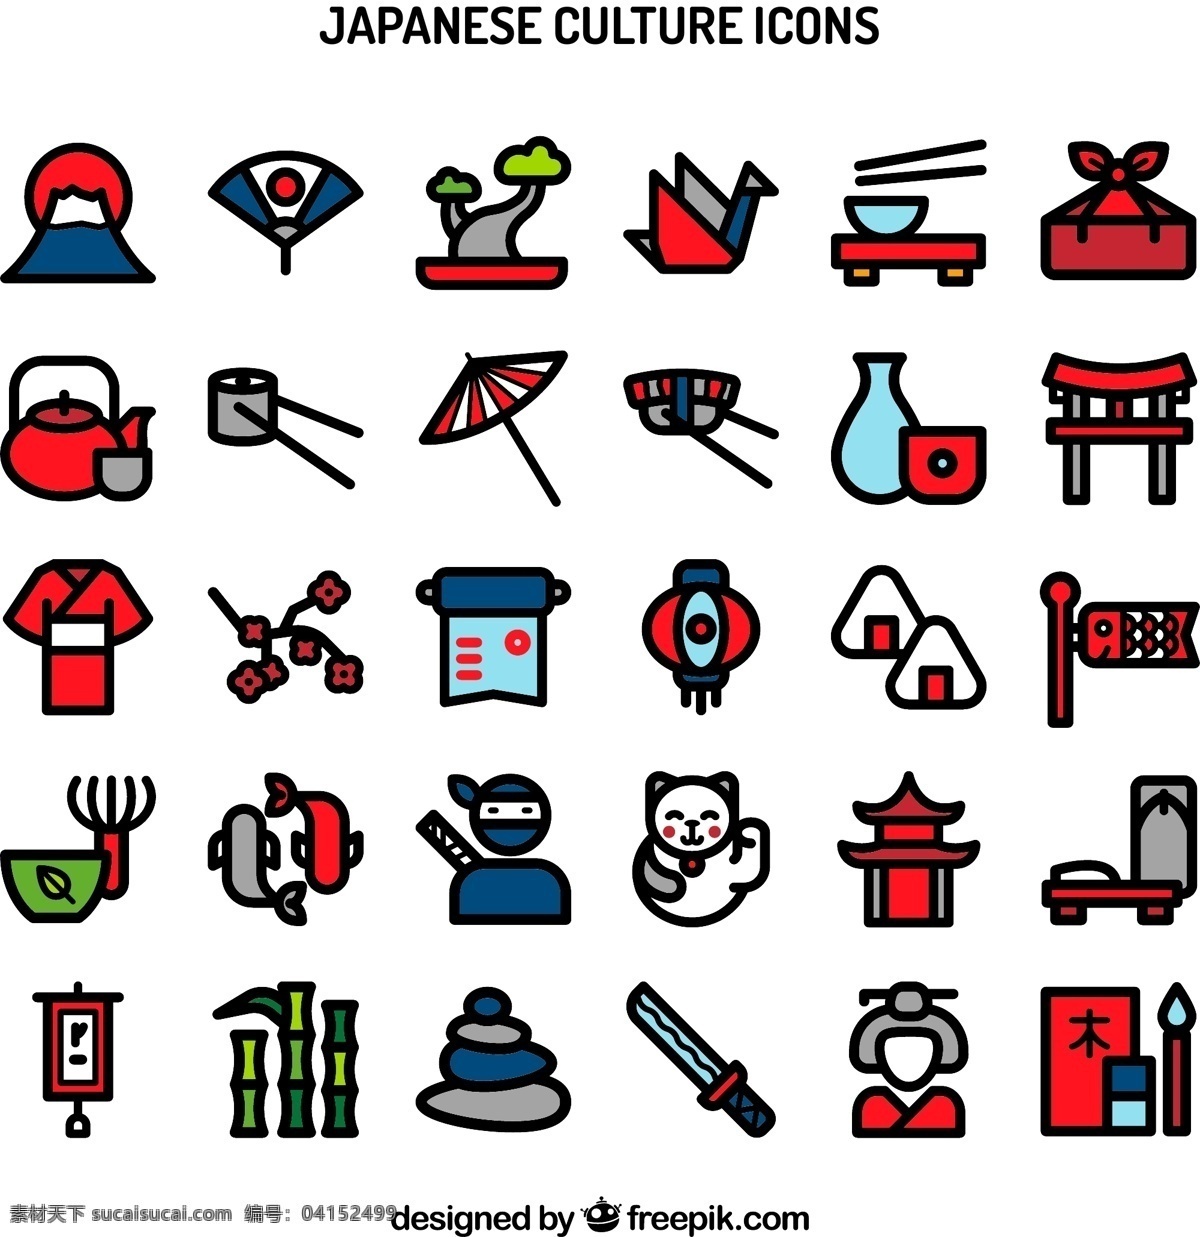 款 创意 日本 文化 图标 矢量 图标矢量 矢量素材 招财猫 雨伞 日本文化 文化图标 和服 饭团